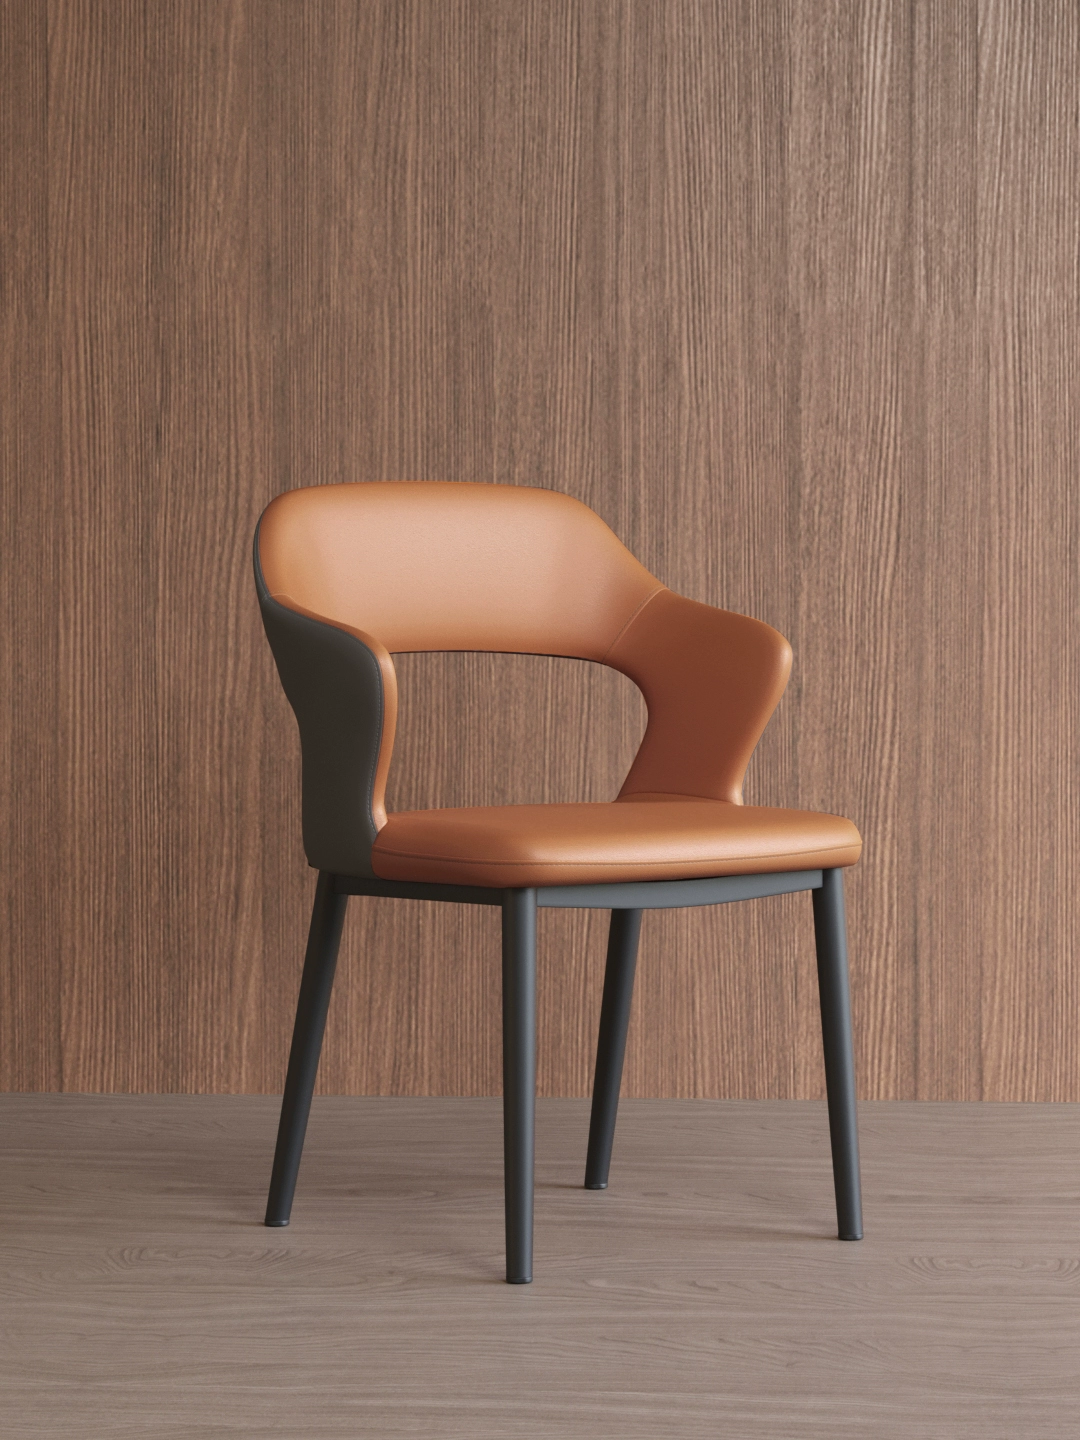 ghế gỗ bàn ăn Ý ánh sáng ghế ăn sang trọng nhà hiện đại công nghệ đơn giản ghế vải Bắc Âu đàm phán ghế khách sạn mạt chược lưng ghế bàn ăn nguyên khối bàn ăn tân cổ điển 